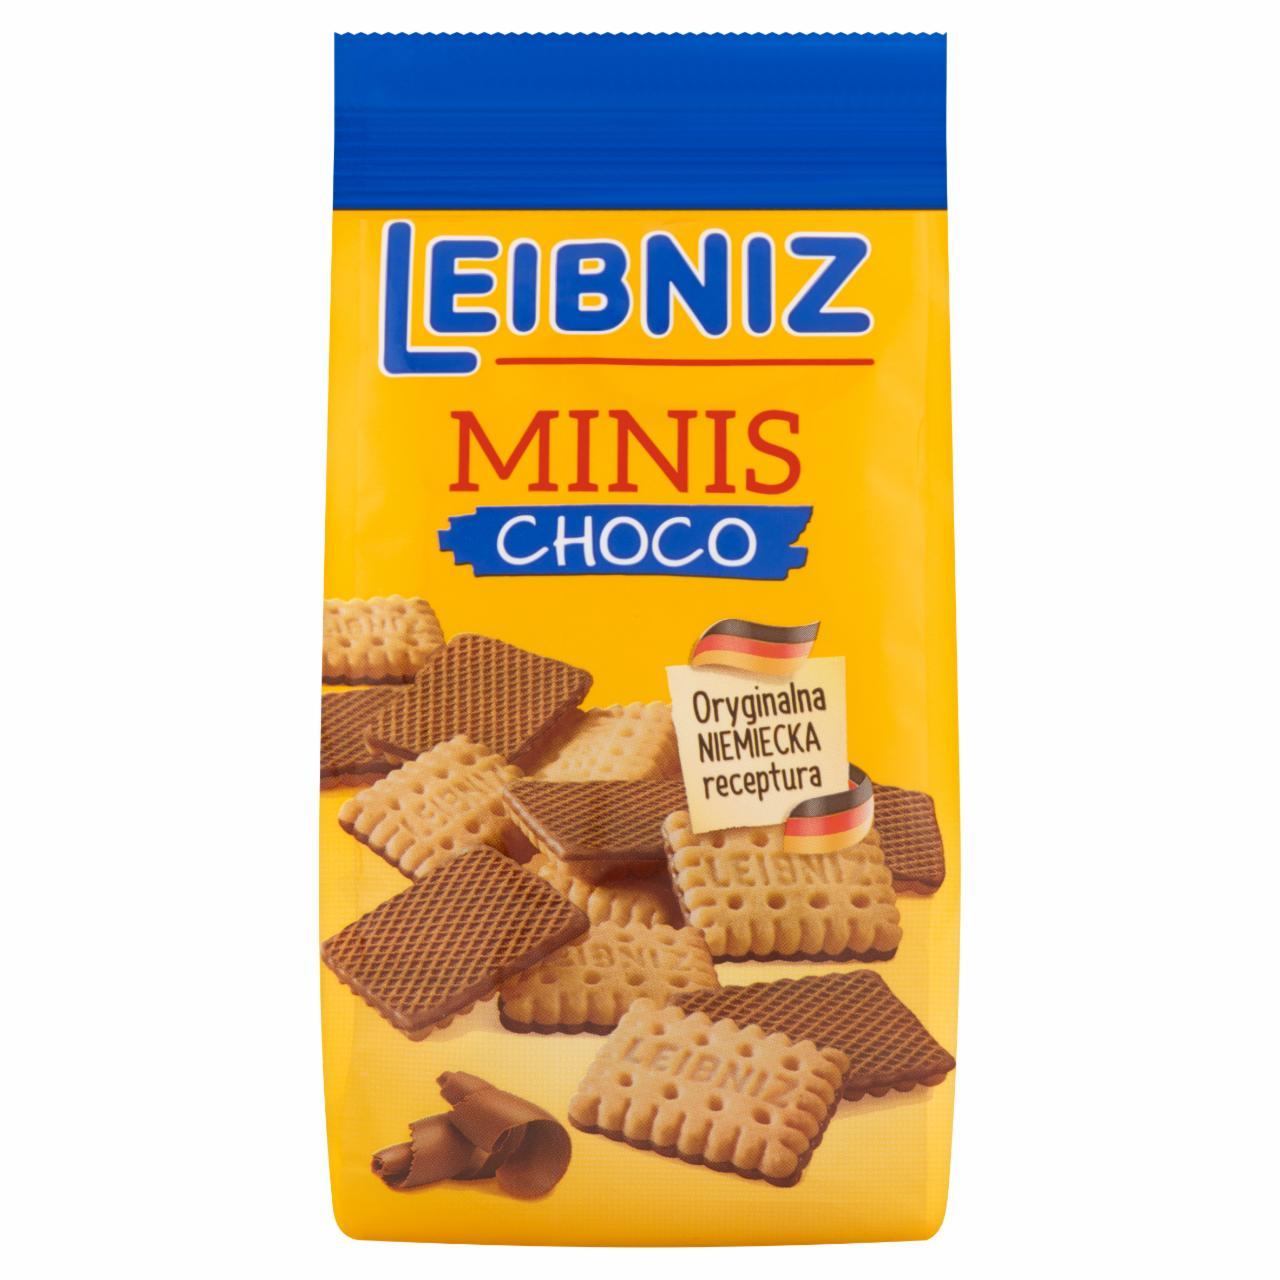 Фото - Печиво в молочному шоколаді Minis Choco Leibniz